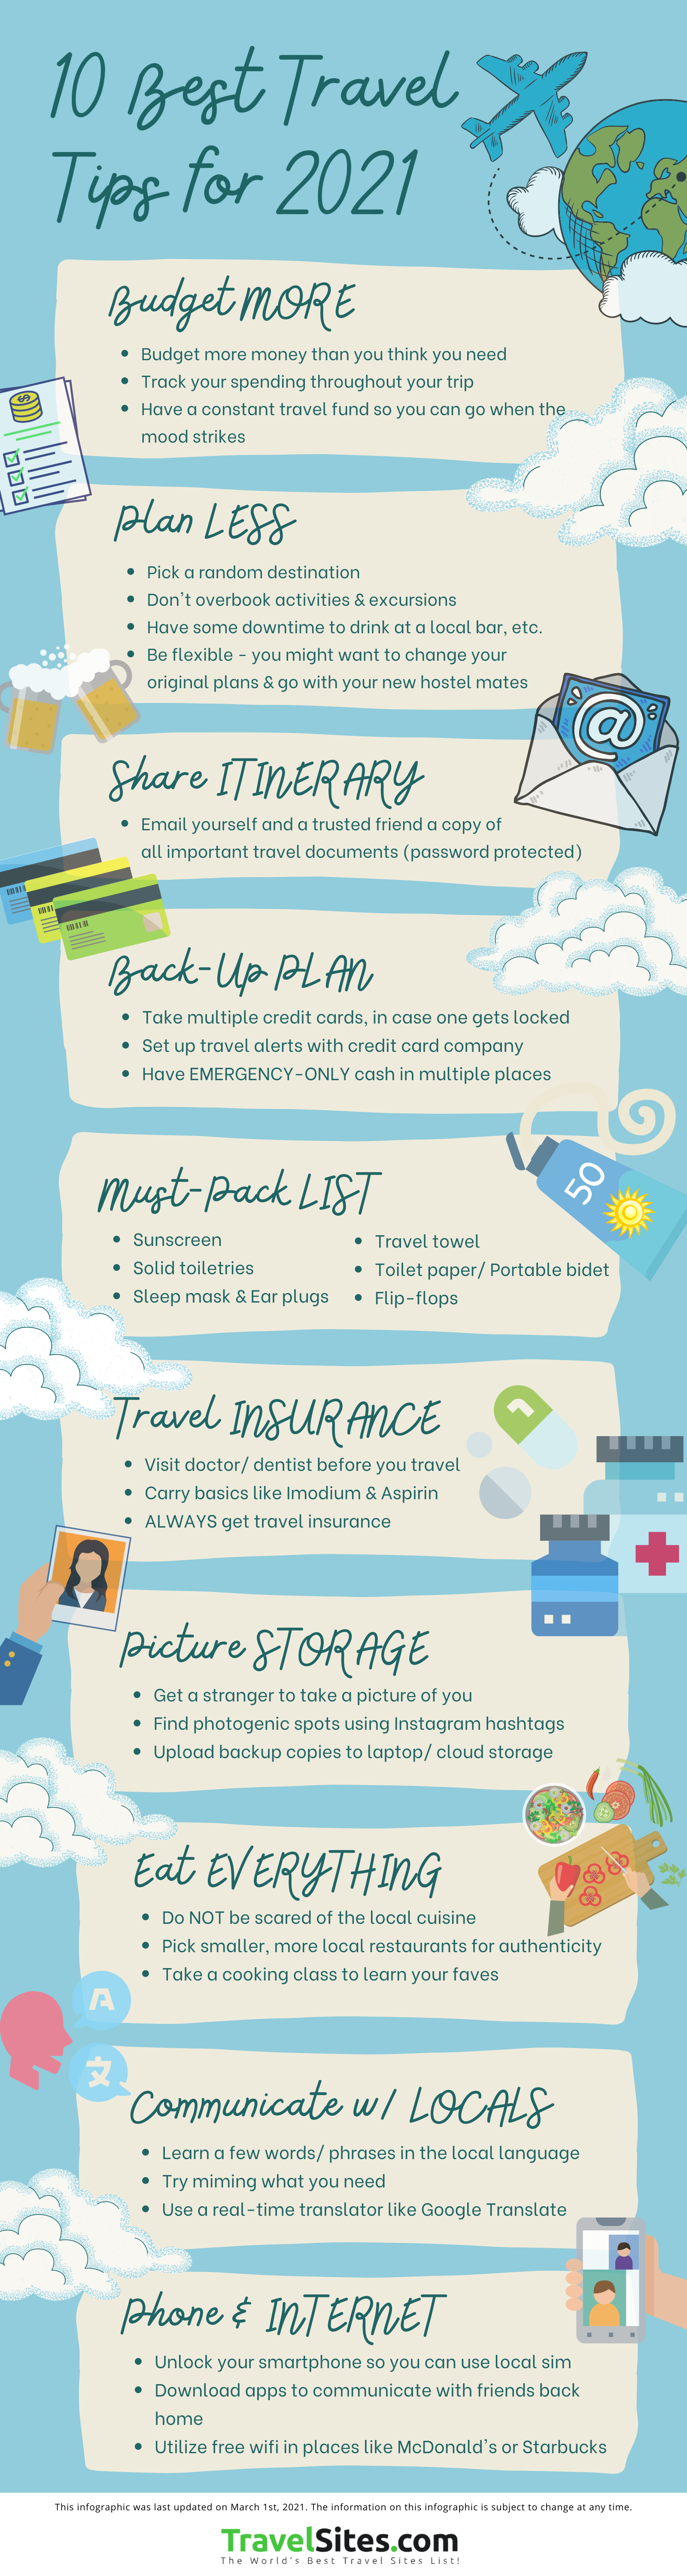 10 Best Travel Tips for 2021